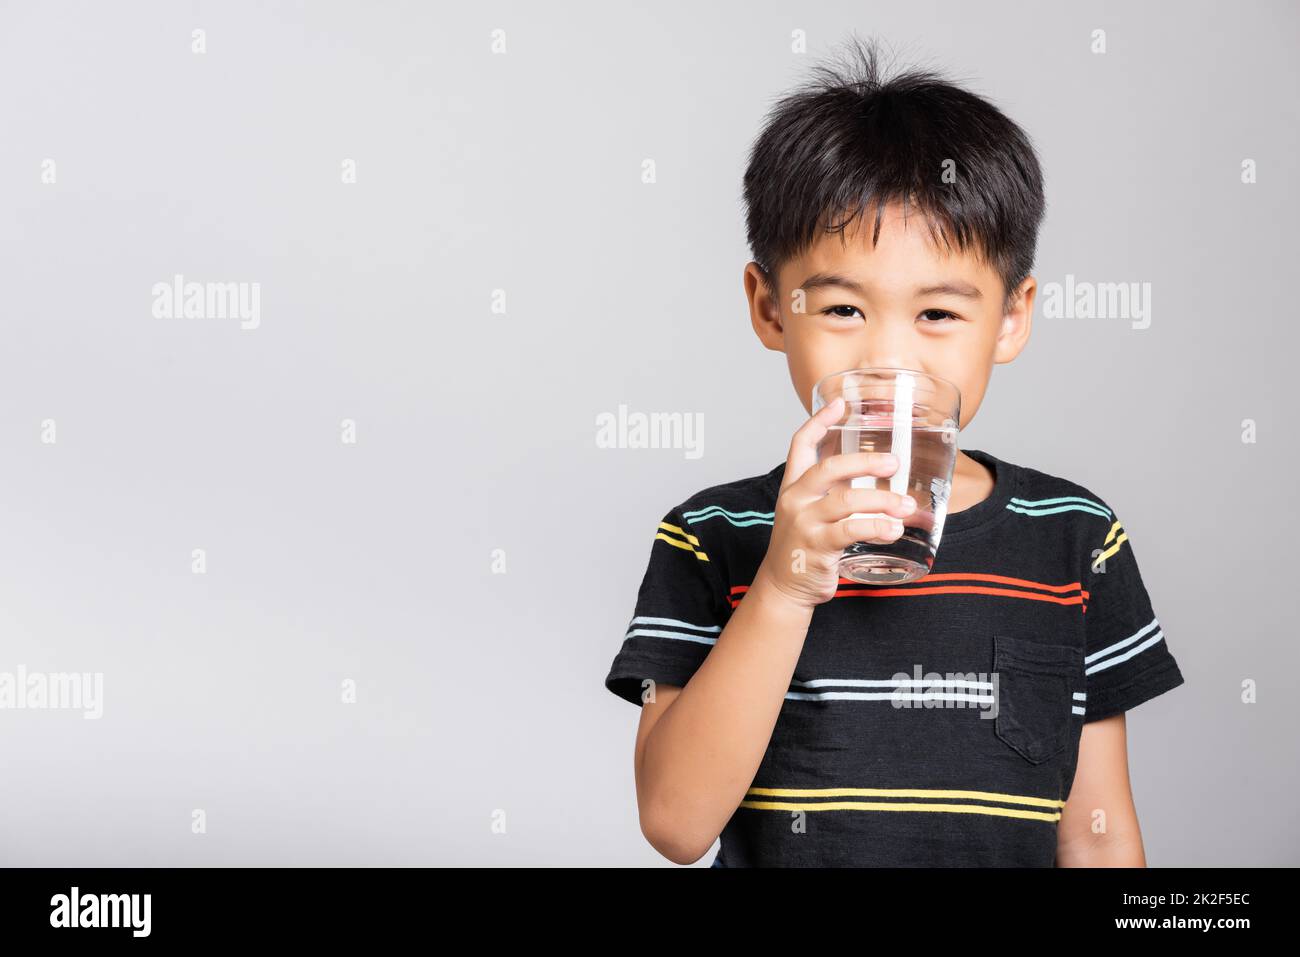 Bambino piccolo carino ragazzo di 5-6 anni sorriso bere acqua fresca dal vetro in studio ripresa isolato Foto Stock